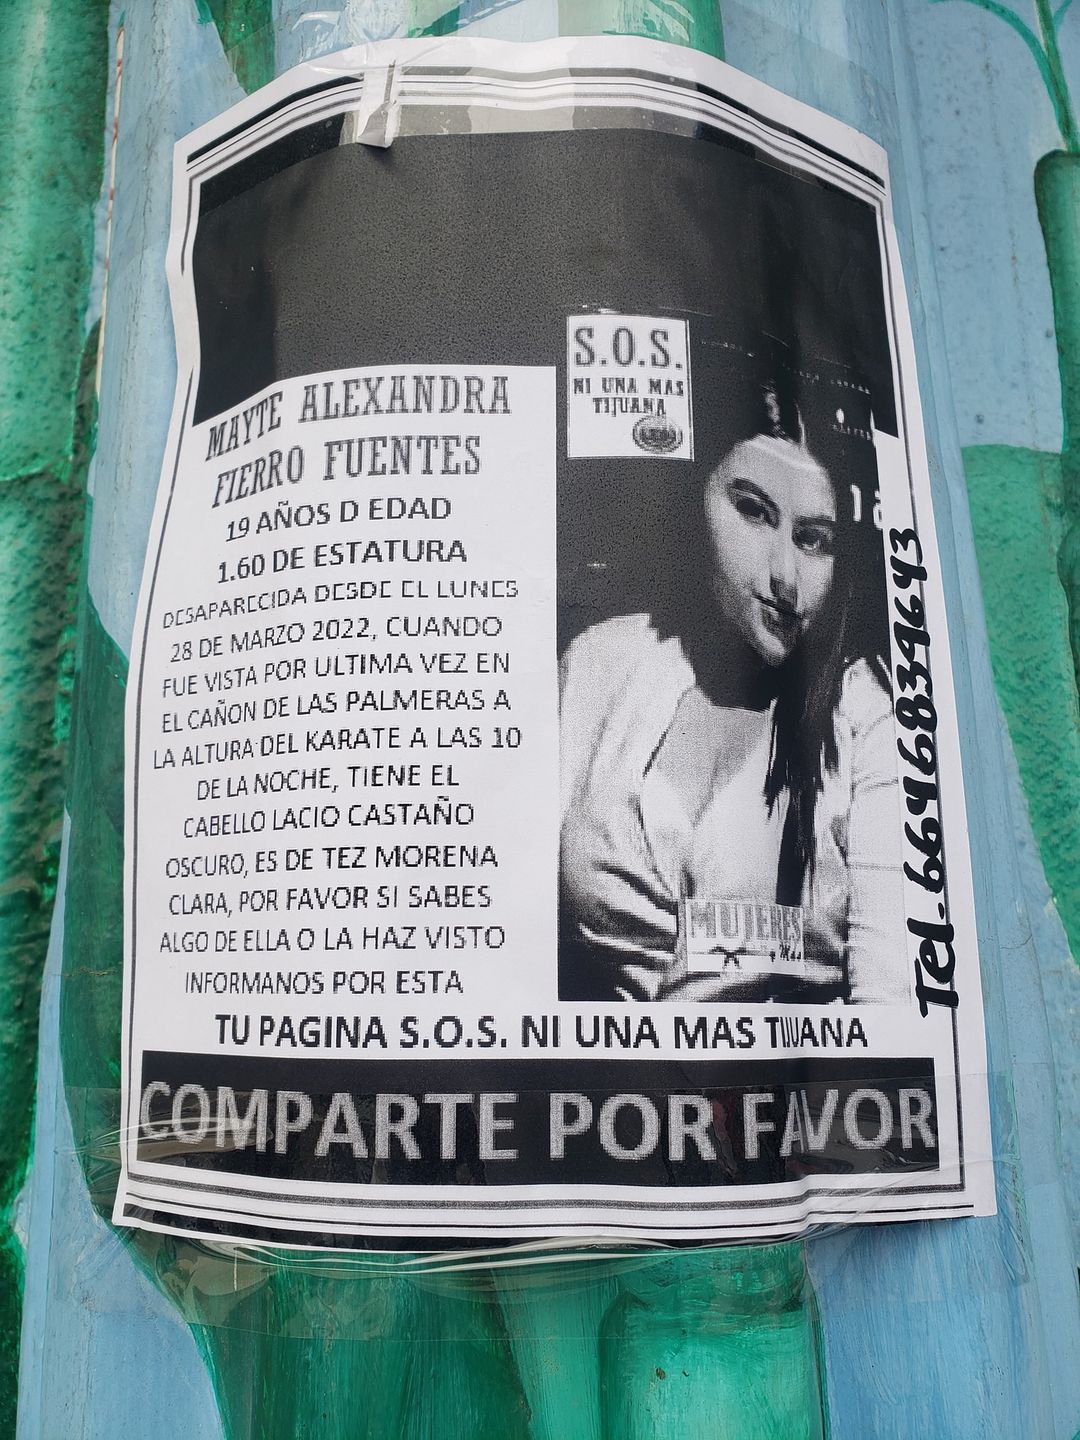 DóndeEstá  Mayte Alexandra Fierro Fuentes fue vista por última